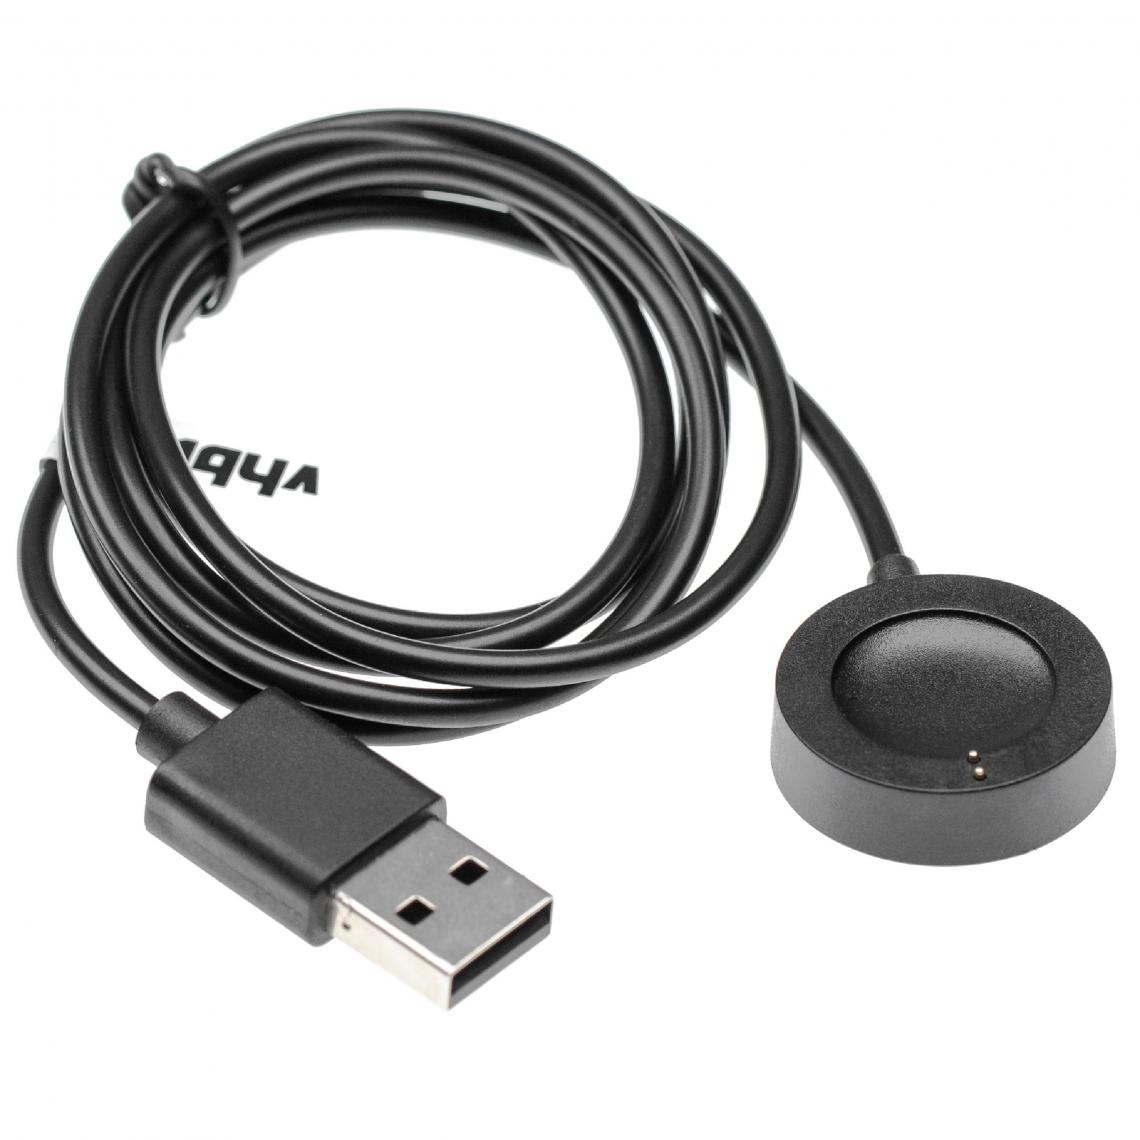 Vhbw - vhbw Câble de charge compatible avec Emporio Armani smartwatch, montre de fitness - Station de charge, noir, magnétique - Accessoires montres connectées